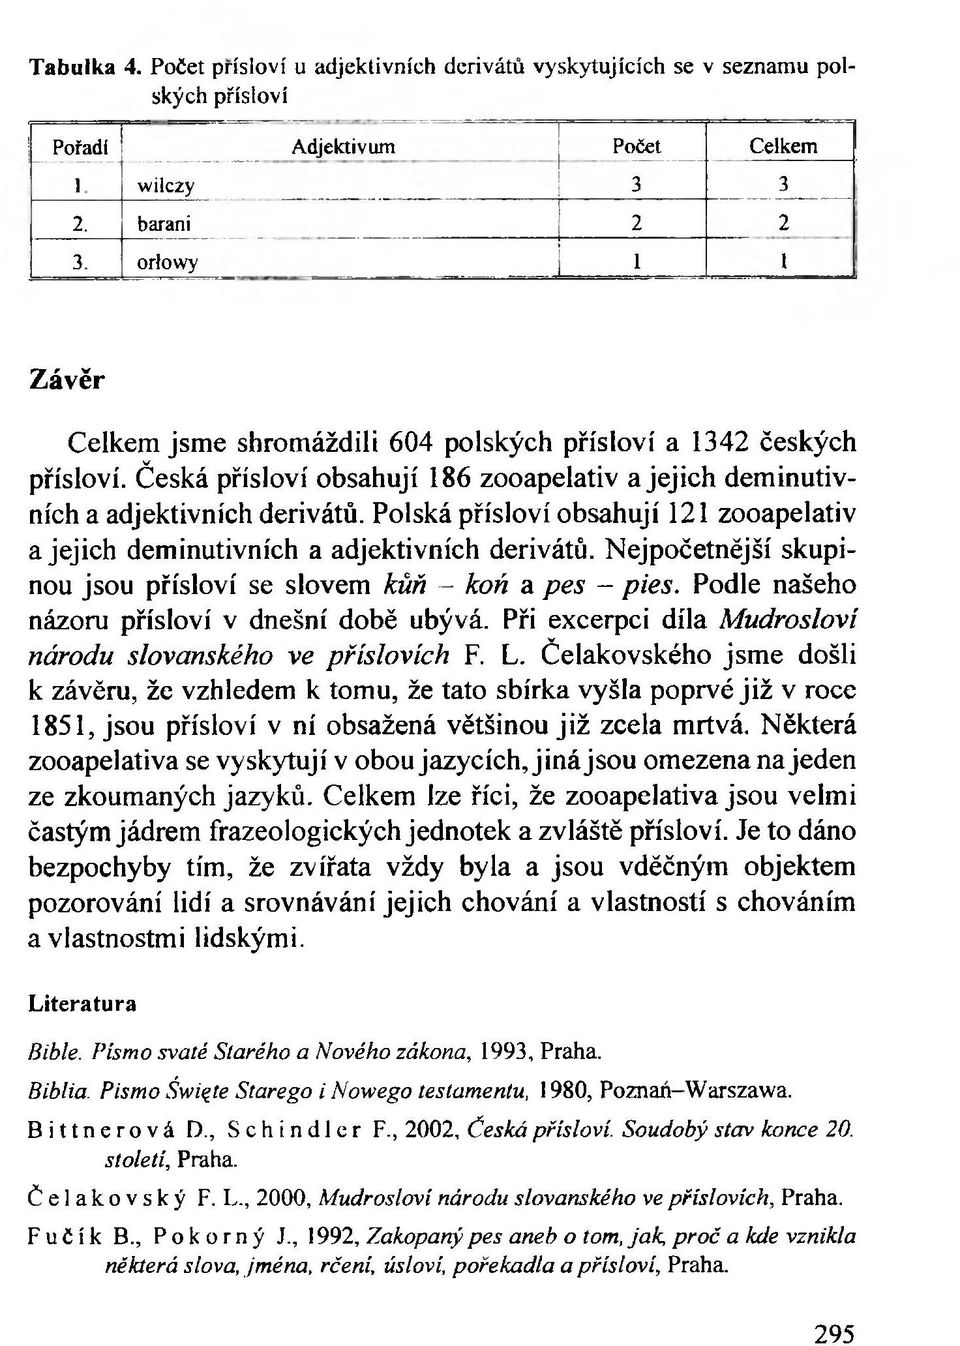 Polská přísloví obsahují 121 zooapelativ a jejich deminutivních a adjektivních derivátů. Nejpočetnější skupinou jsou přísloví se slovem kůň - koń a pes - pies.